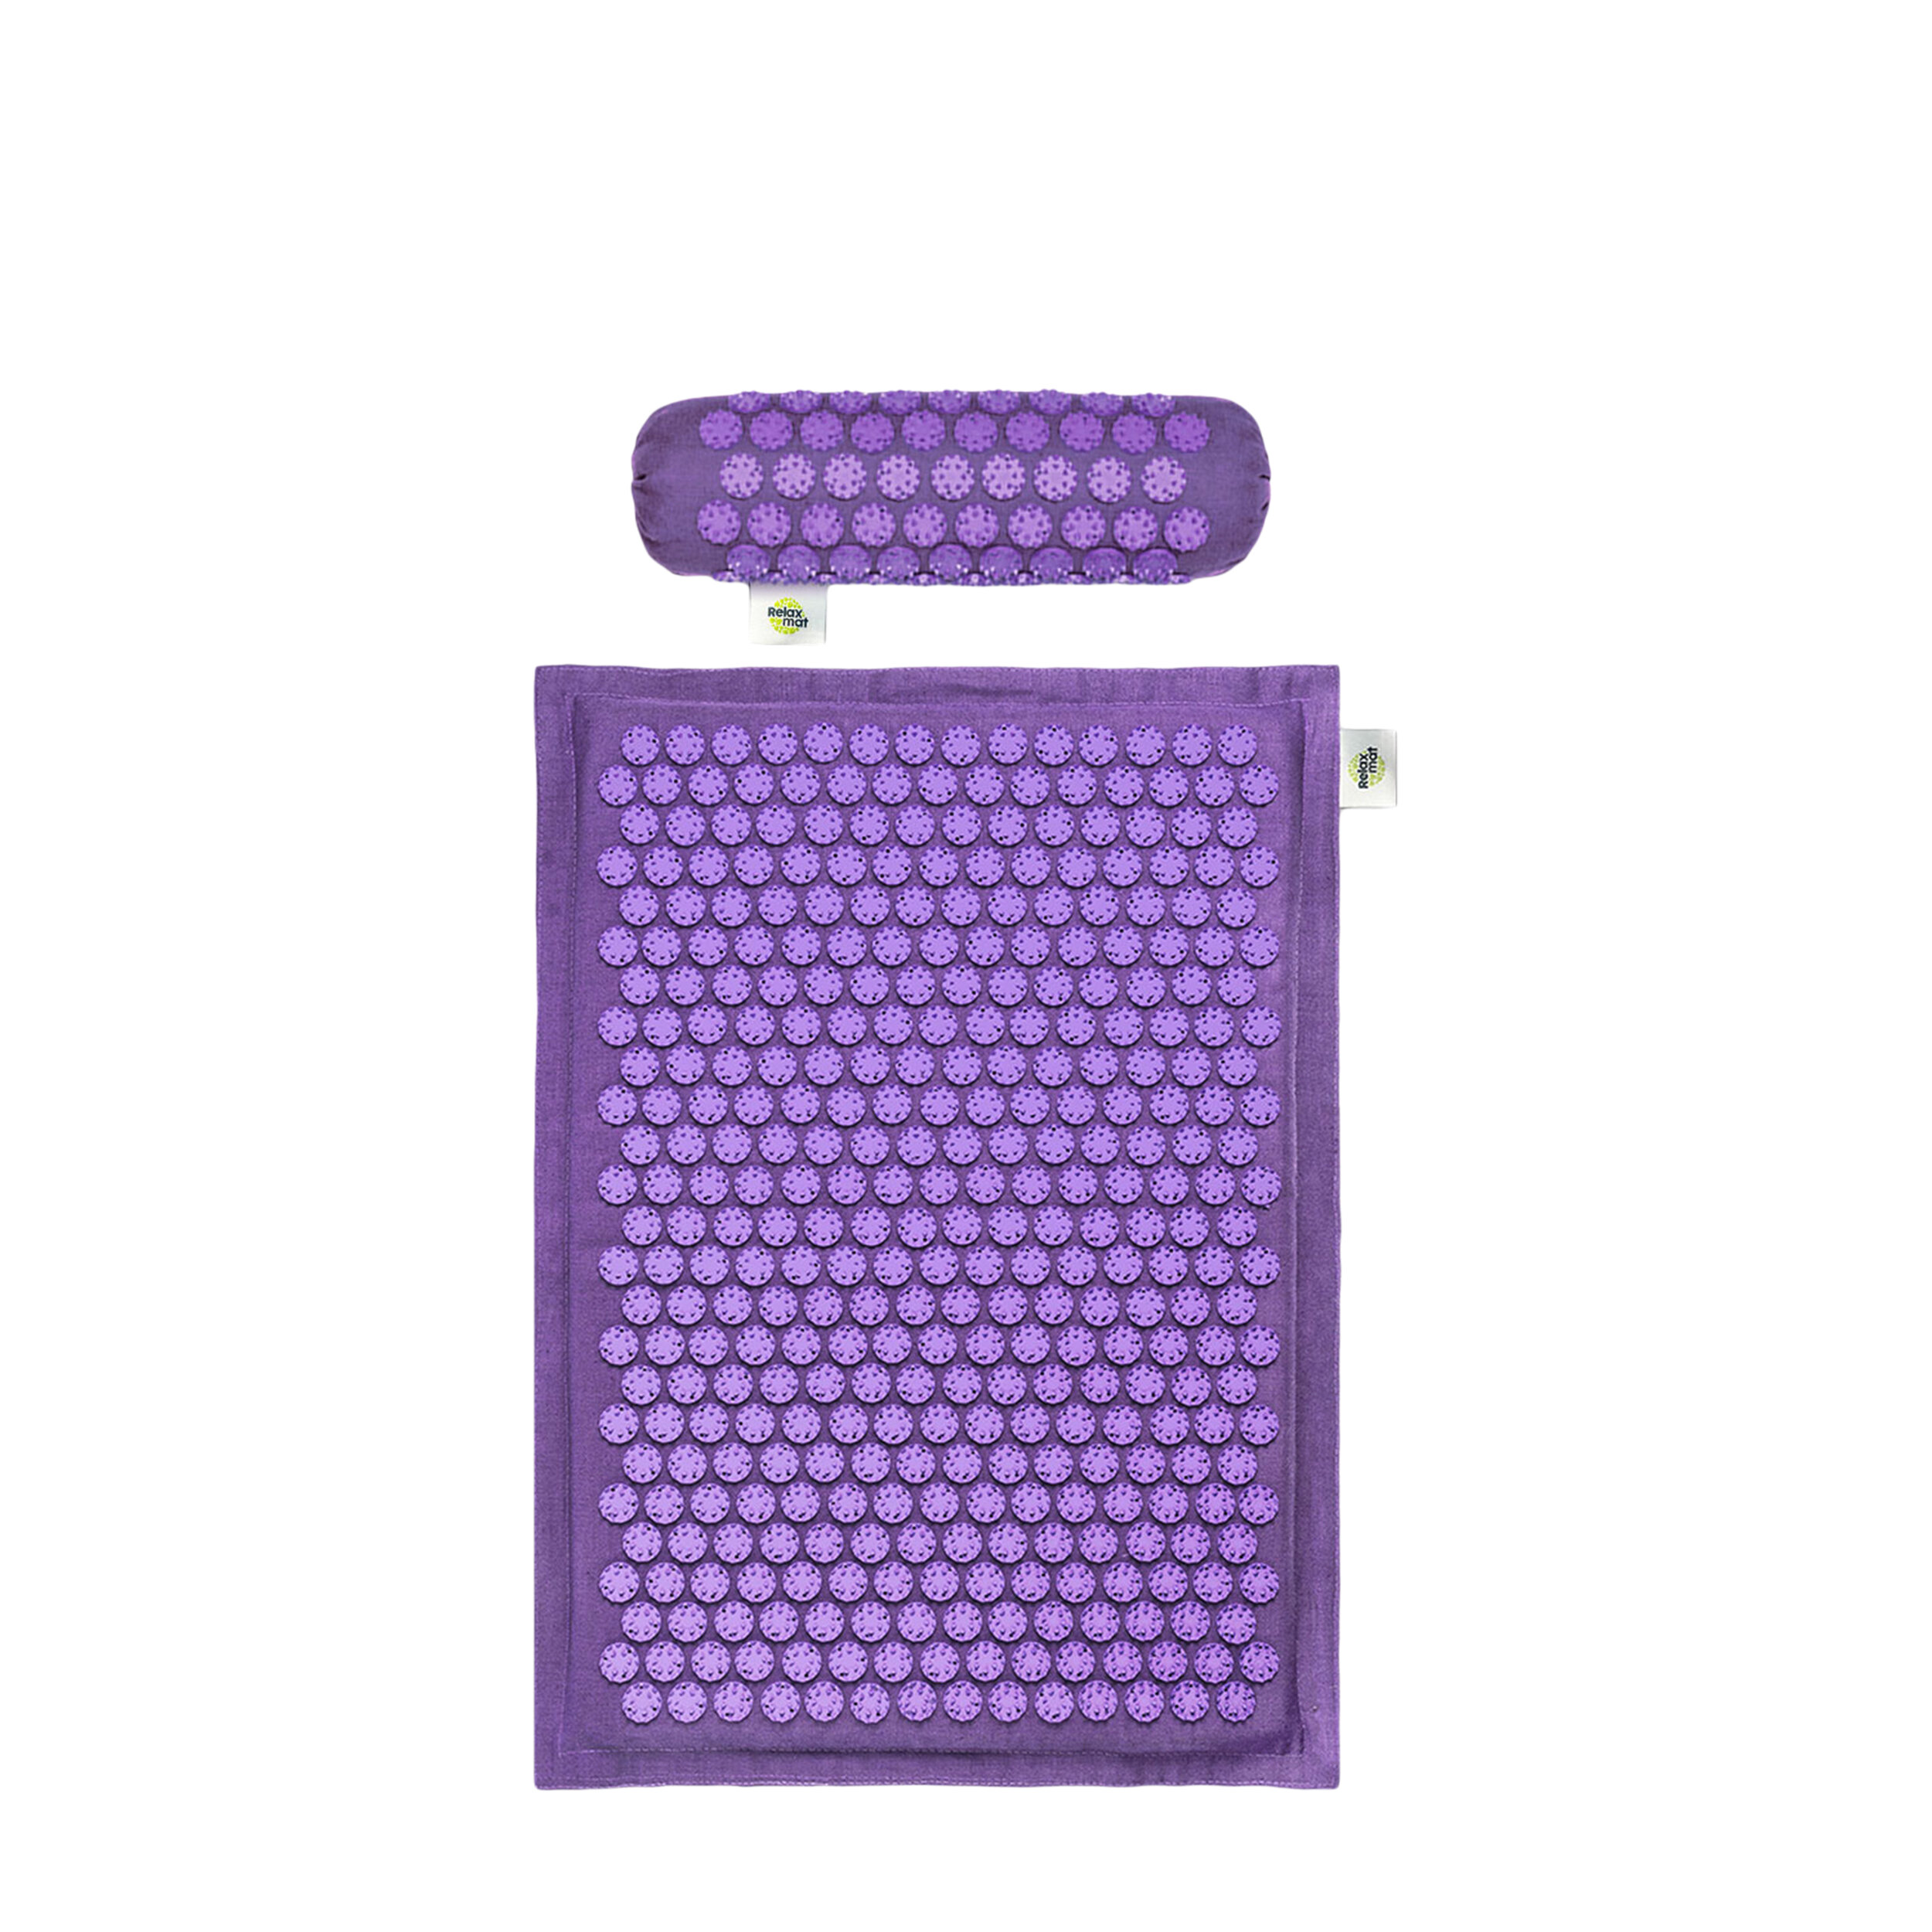 Relaxmat Массажный комплект: коврик + валик фиолетовый/Набор Relaxmat фиолетовый:Игольчатый коврик 60Х40+ Ун